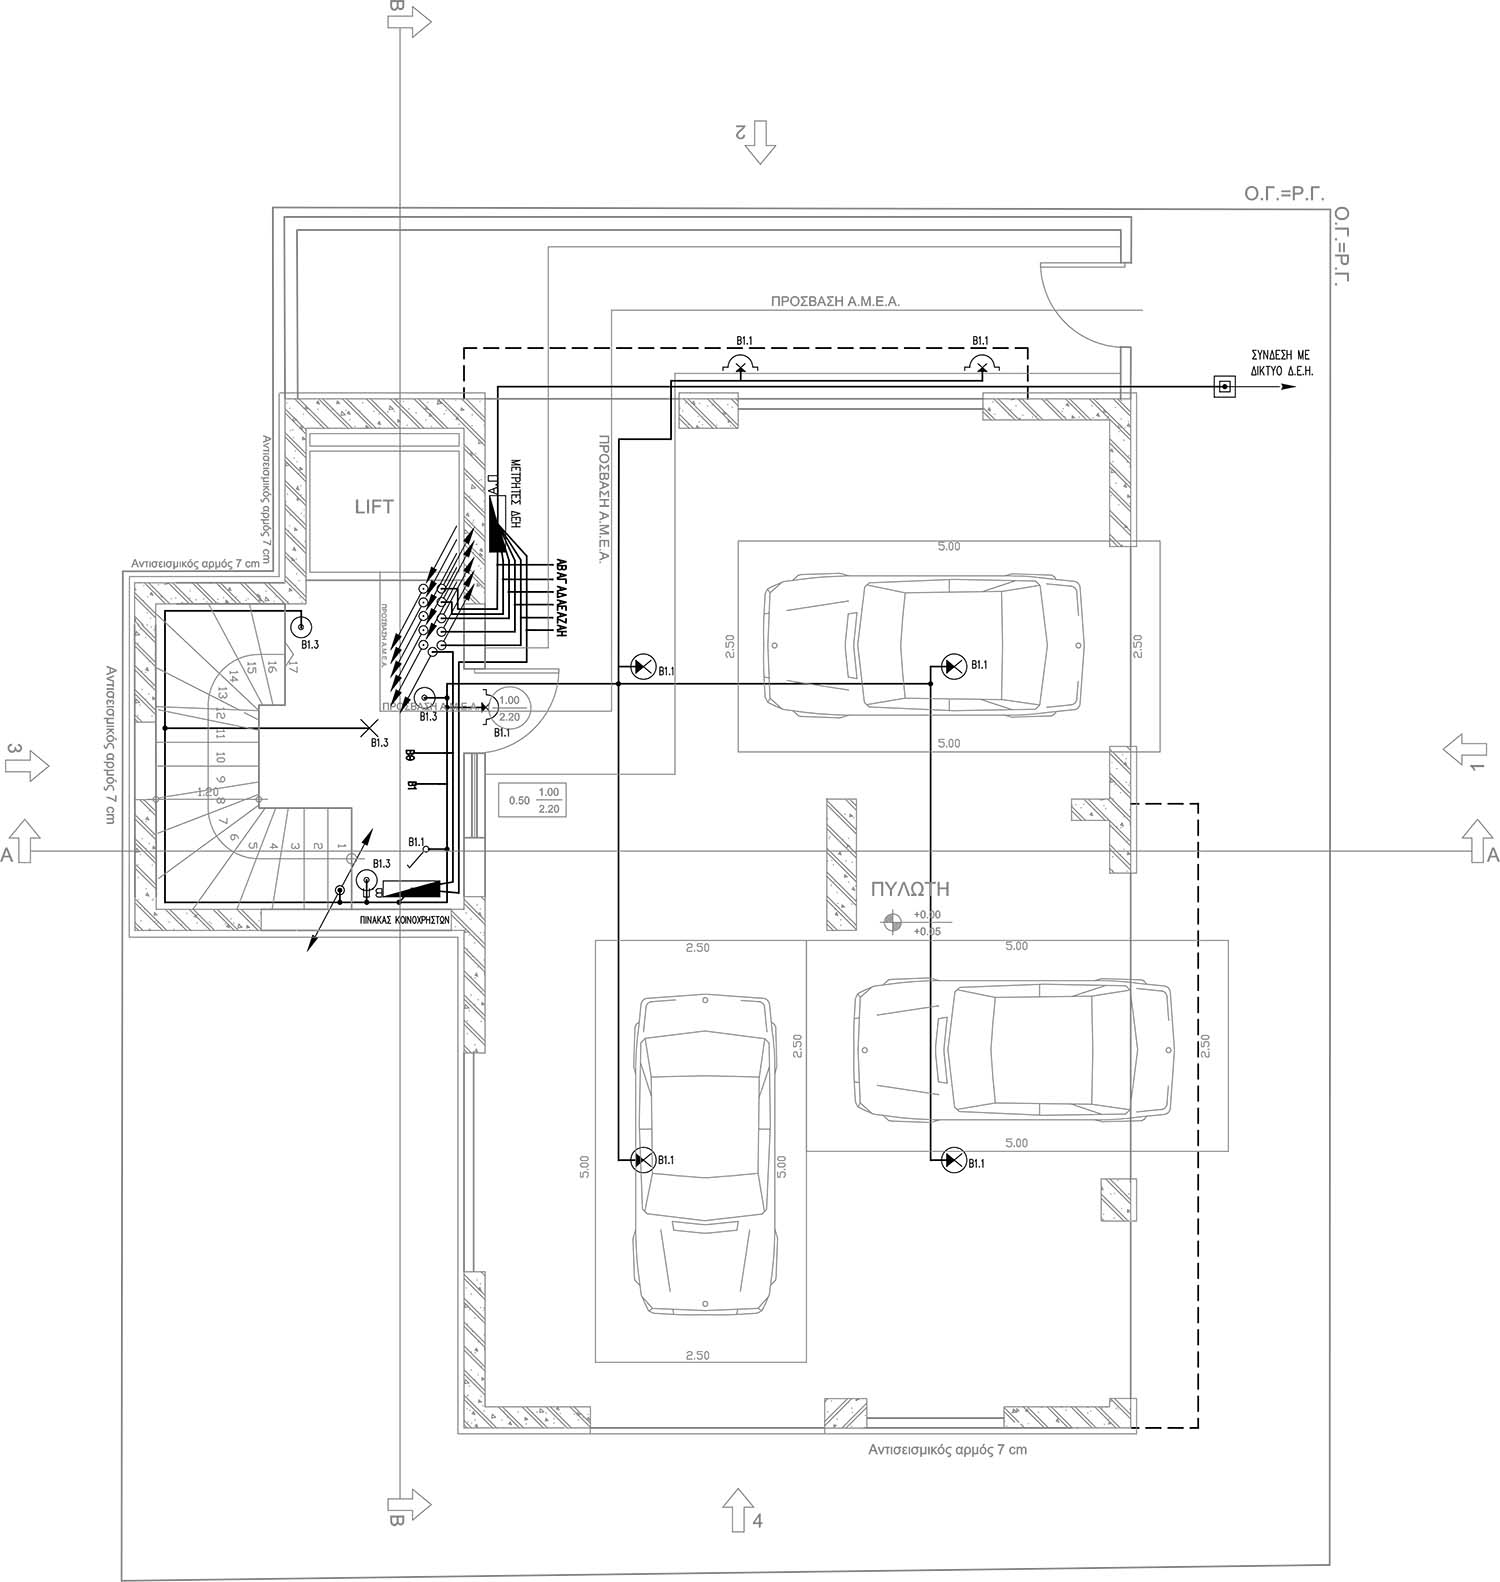 Ηλεκτρολογικό σχέδιο κάτοψης ισογείου πολυκατοικίας από τον ηλεκτρολόγο μηχανικό Νικολαΐδη Παναγιώτη